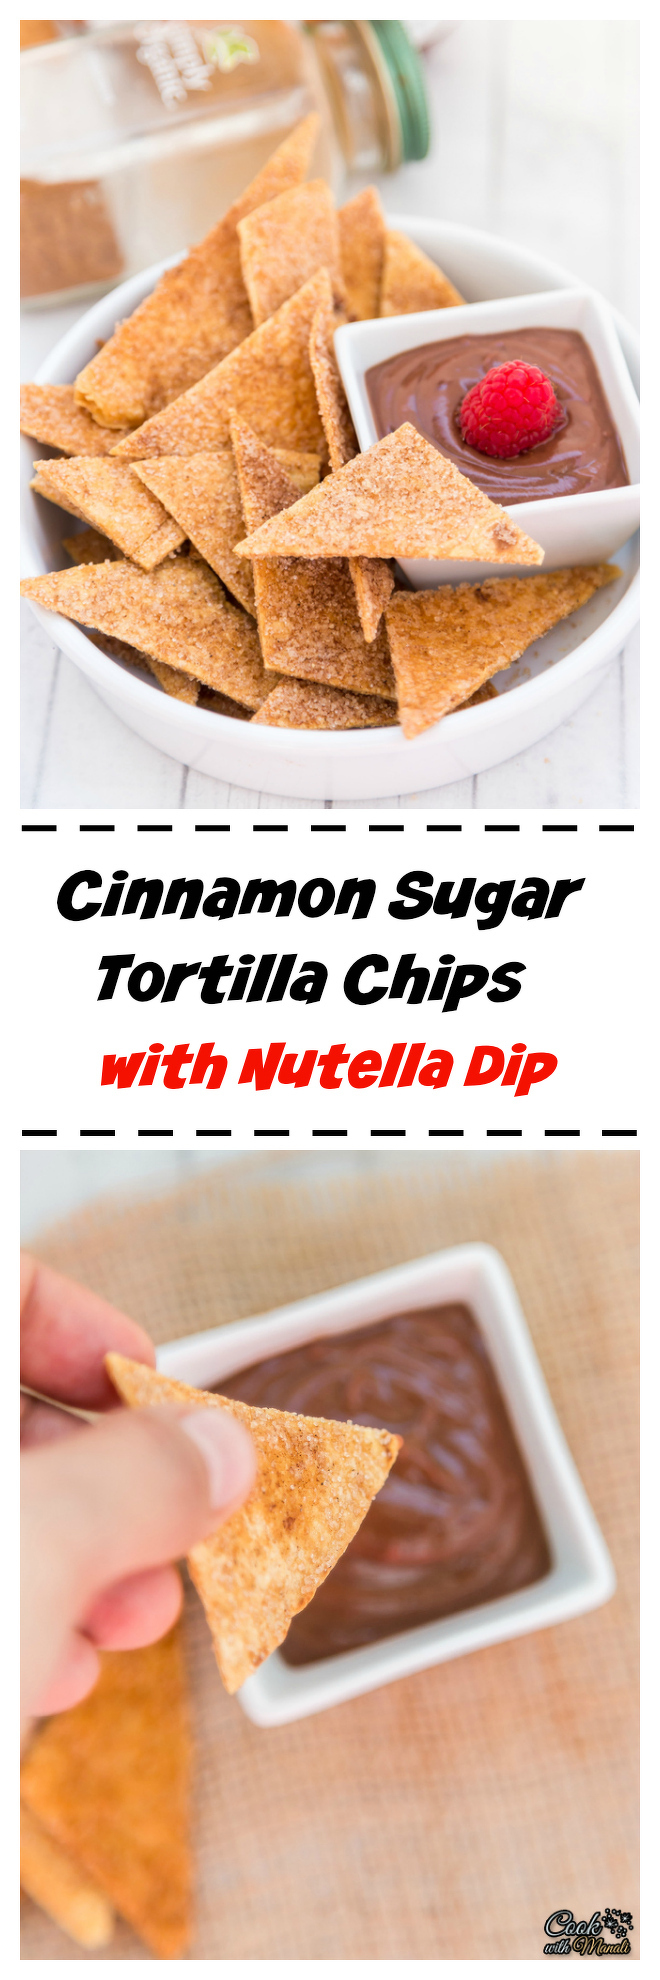 Cinnamon Sugar Tortilla Chips with Nutella Dip Collage-nocwm